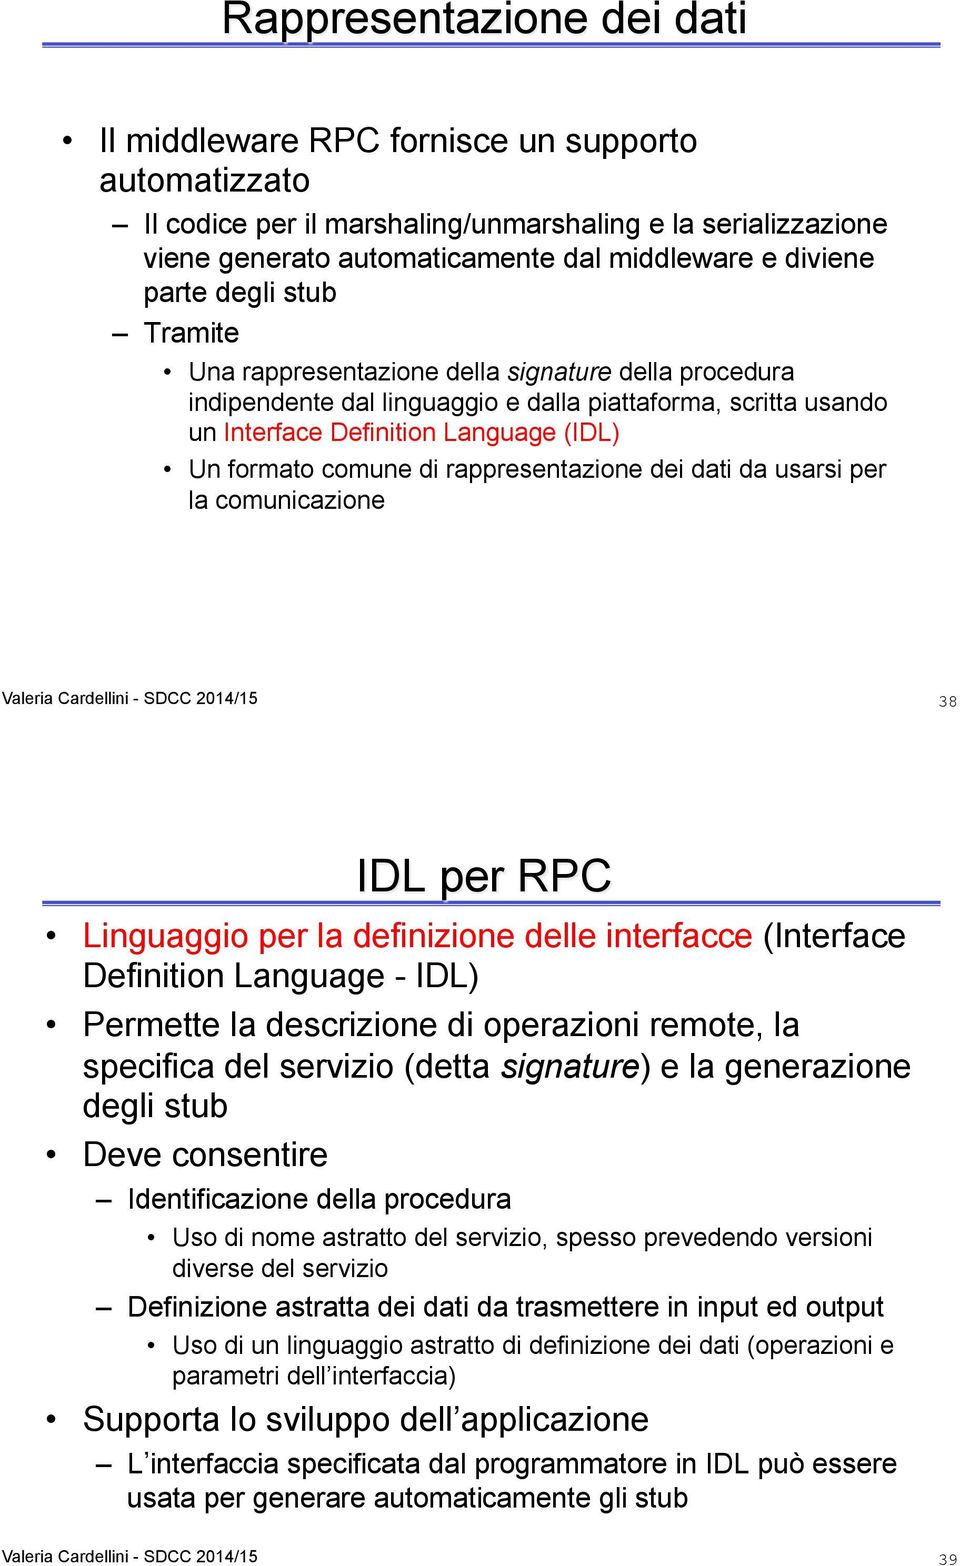 di rappresentazione dei dati da usarsi per la comunicazione 38 IDL per RPC Linguaggio per la definizione delle interfacce (Interface Definition Language - IDL) Permette la descrizione di operazioni